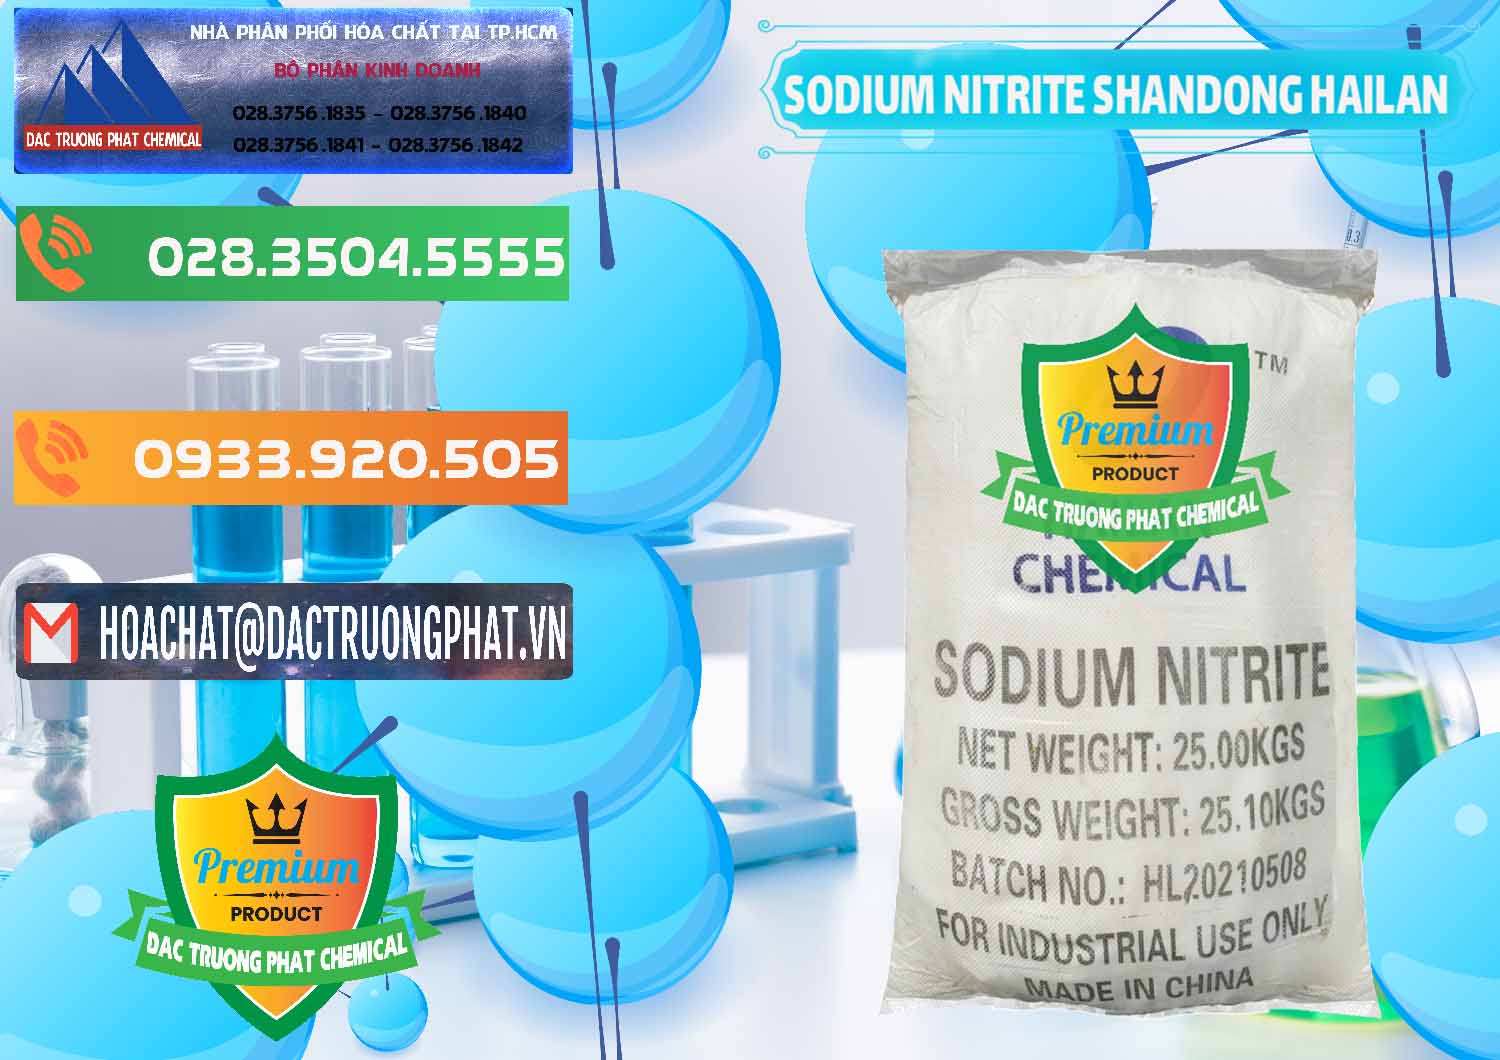 Phân phối và bán Sodium Nitrite - NANO2 99.3% Shandong Hailan Trung Quốc China - 0284 - Công ty phân phối & cung cấp hóa chất tại TP.HCM - hoachatxulynuoc.com.vn